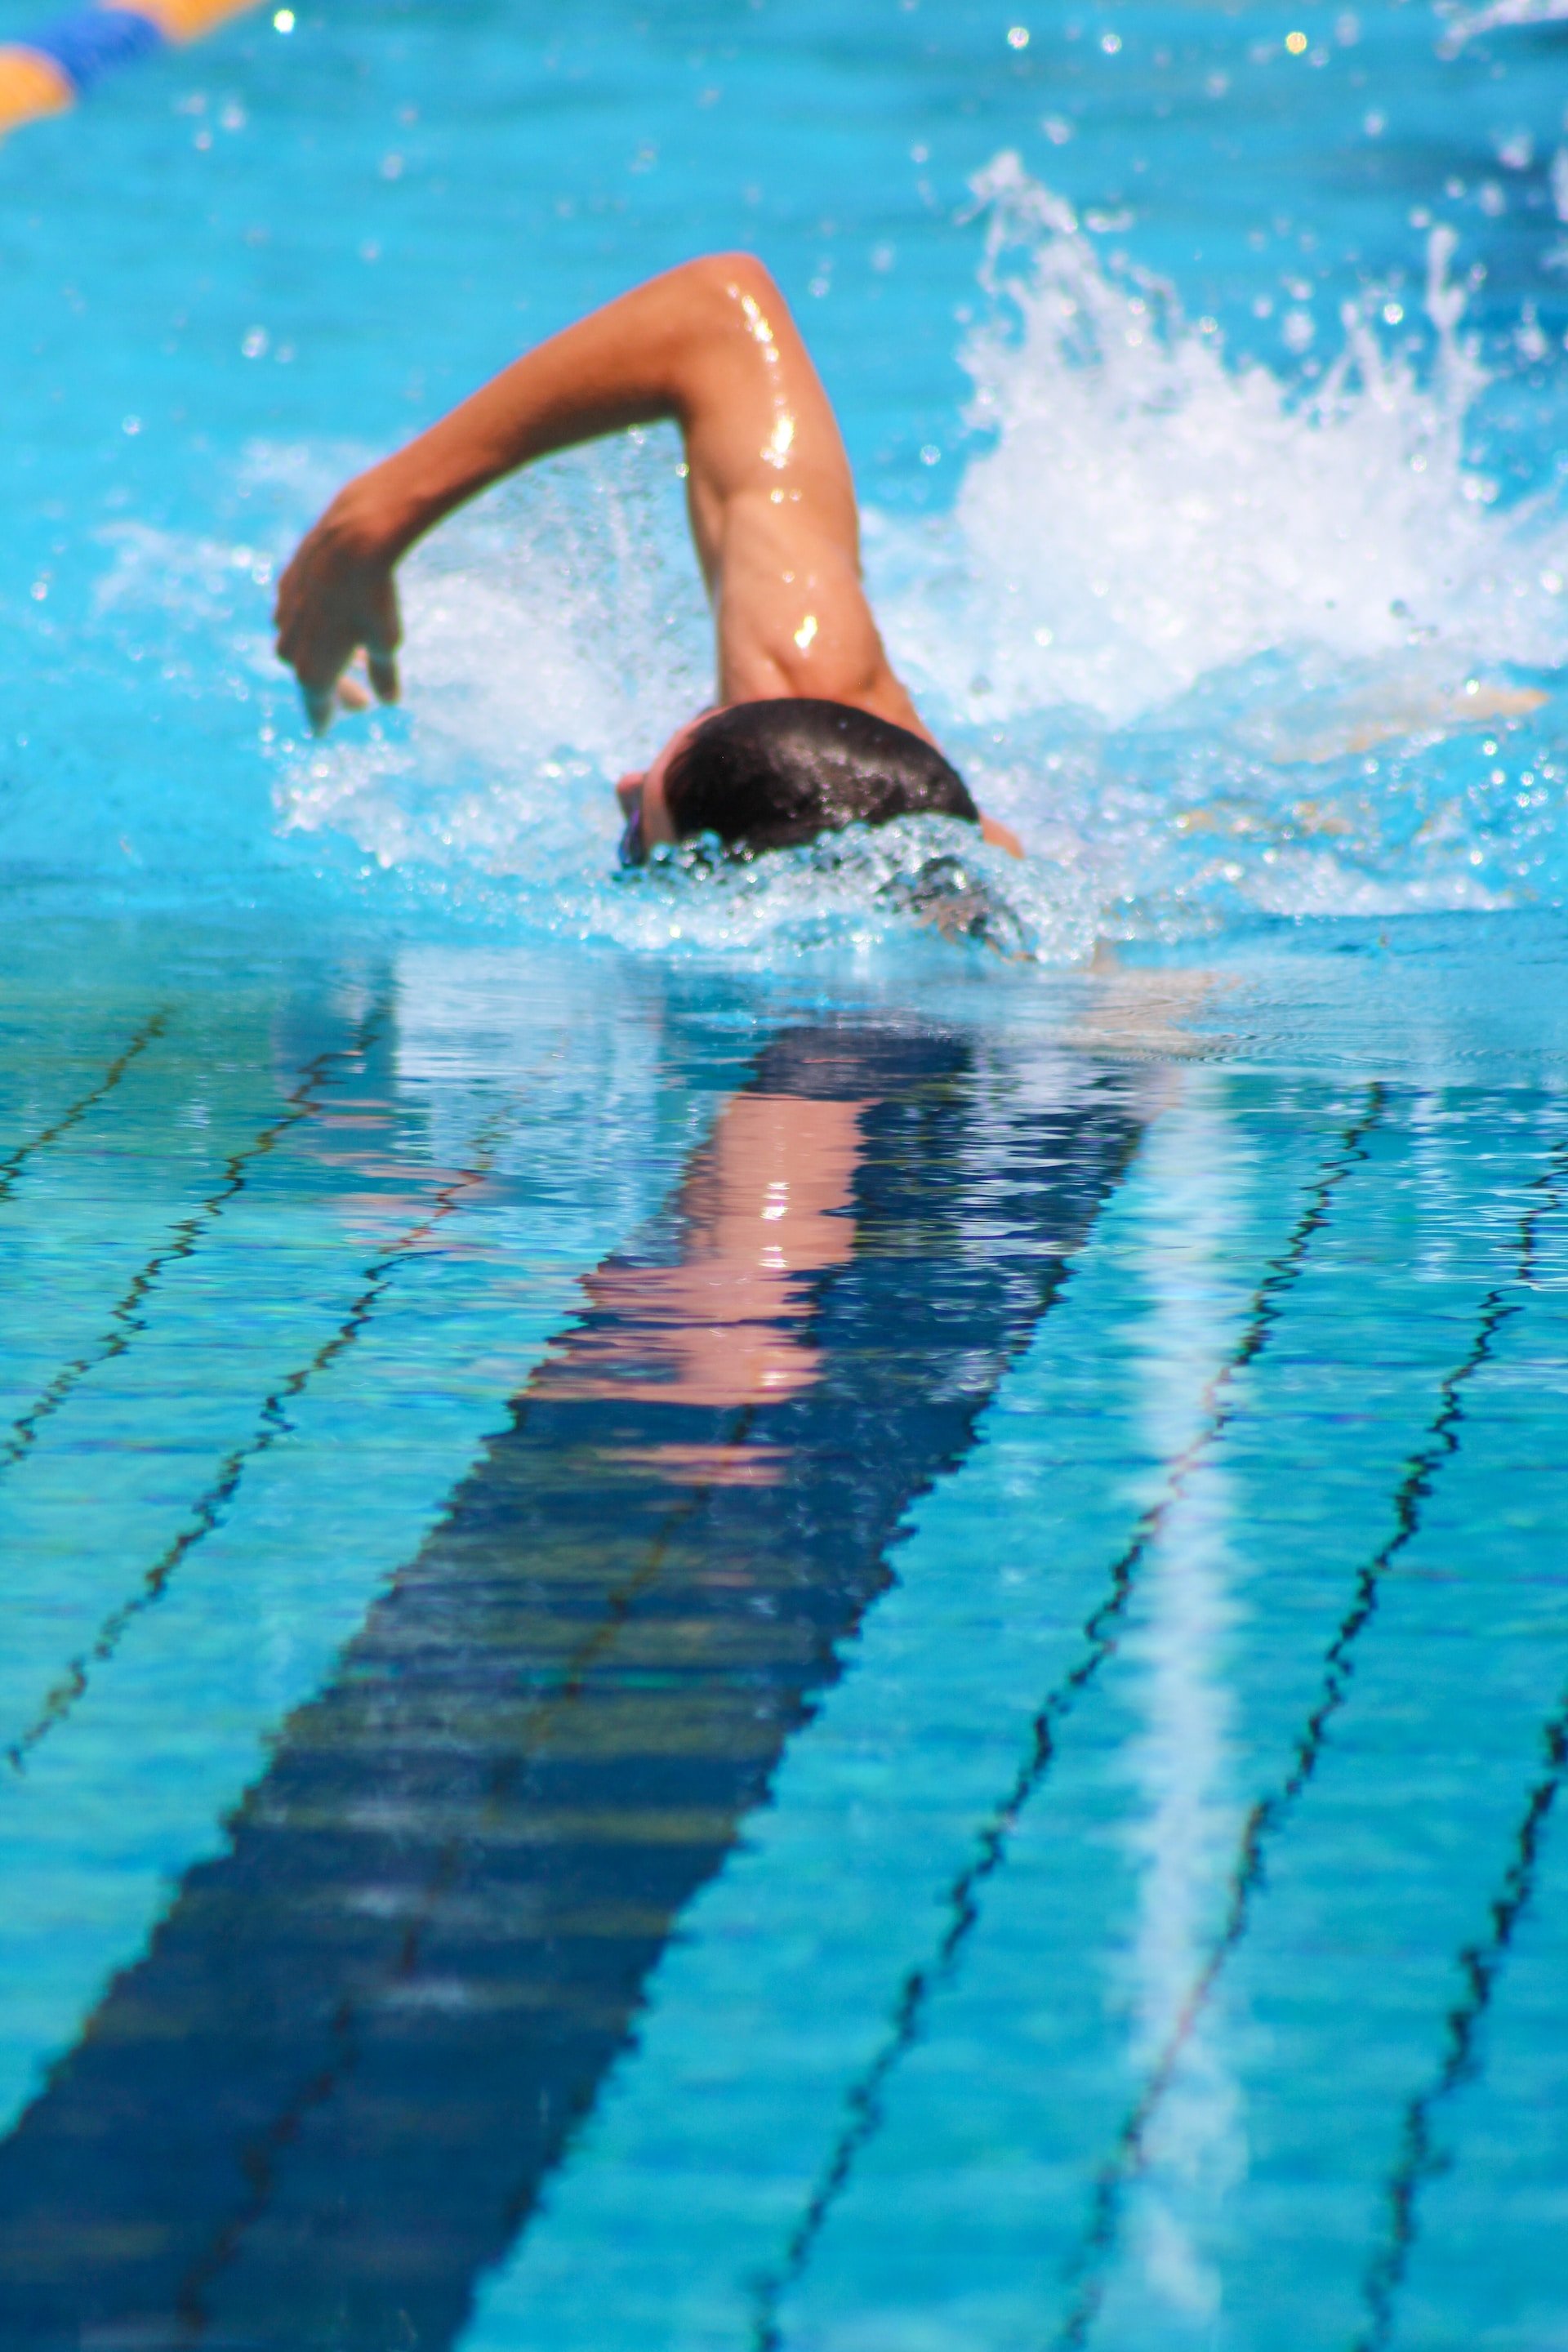 Crol, braça i esquena: repassem la rutina de natació